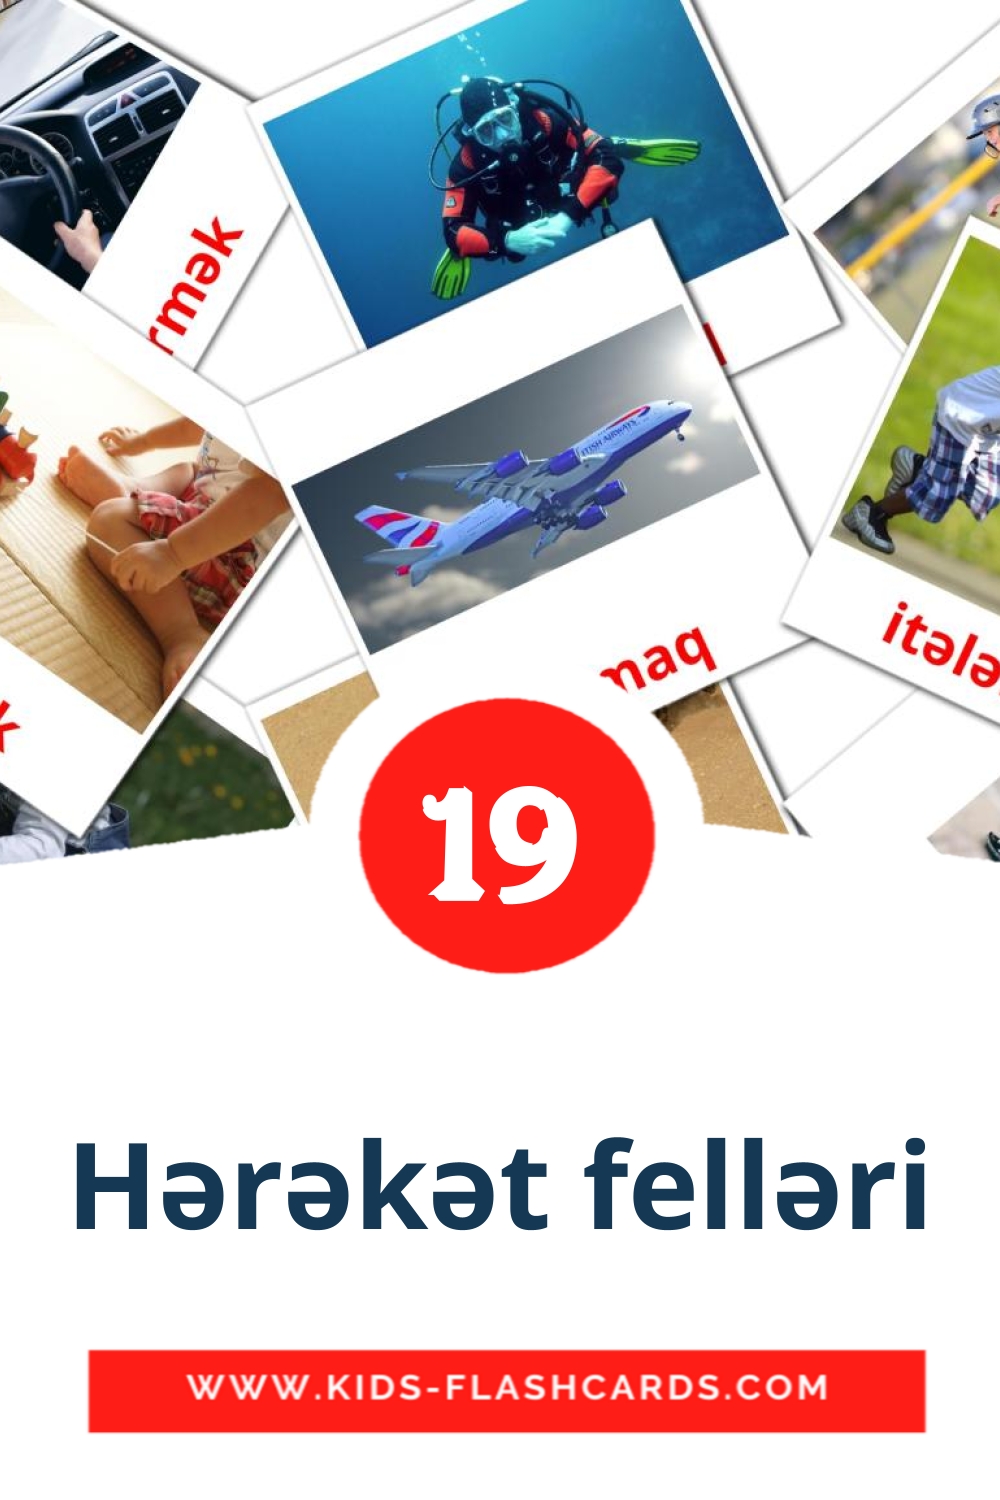 19 tarjetas didacticas de Hərəkət felləri para el jardín de infancia en azerbaiyano